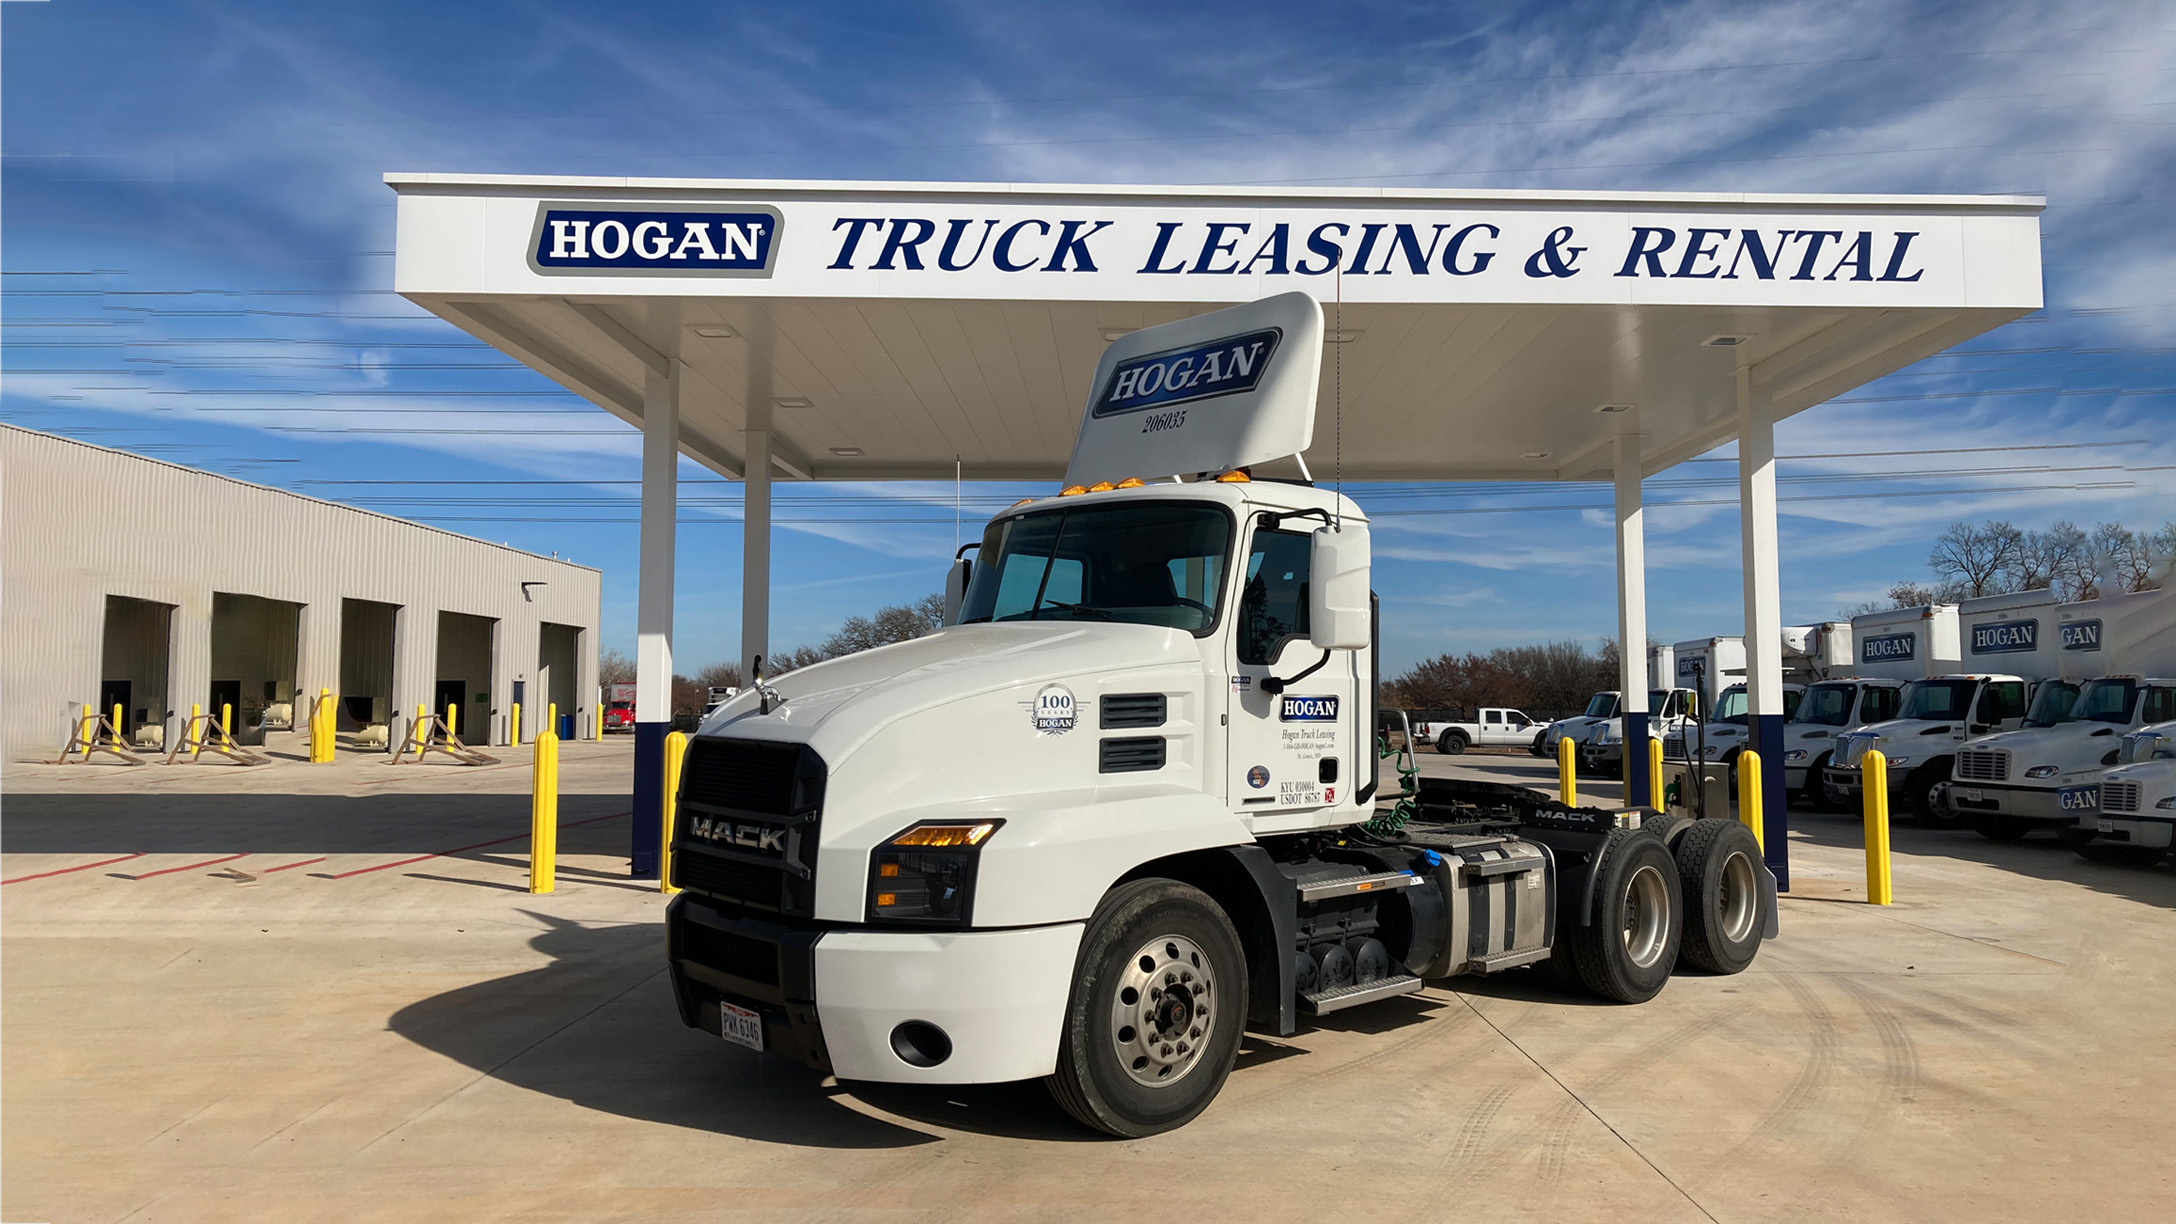 Hogan Truck parked outside Hogan Truck Leasing center